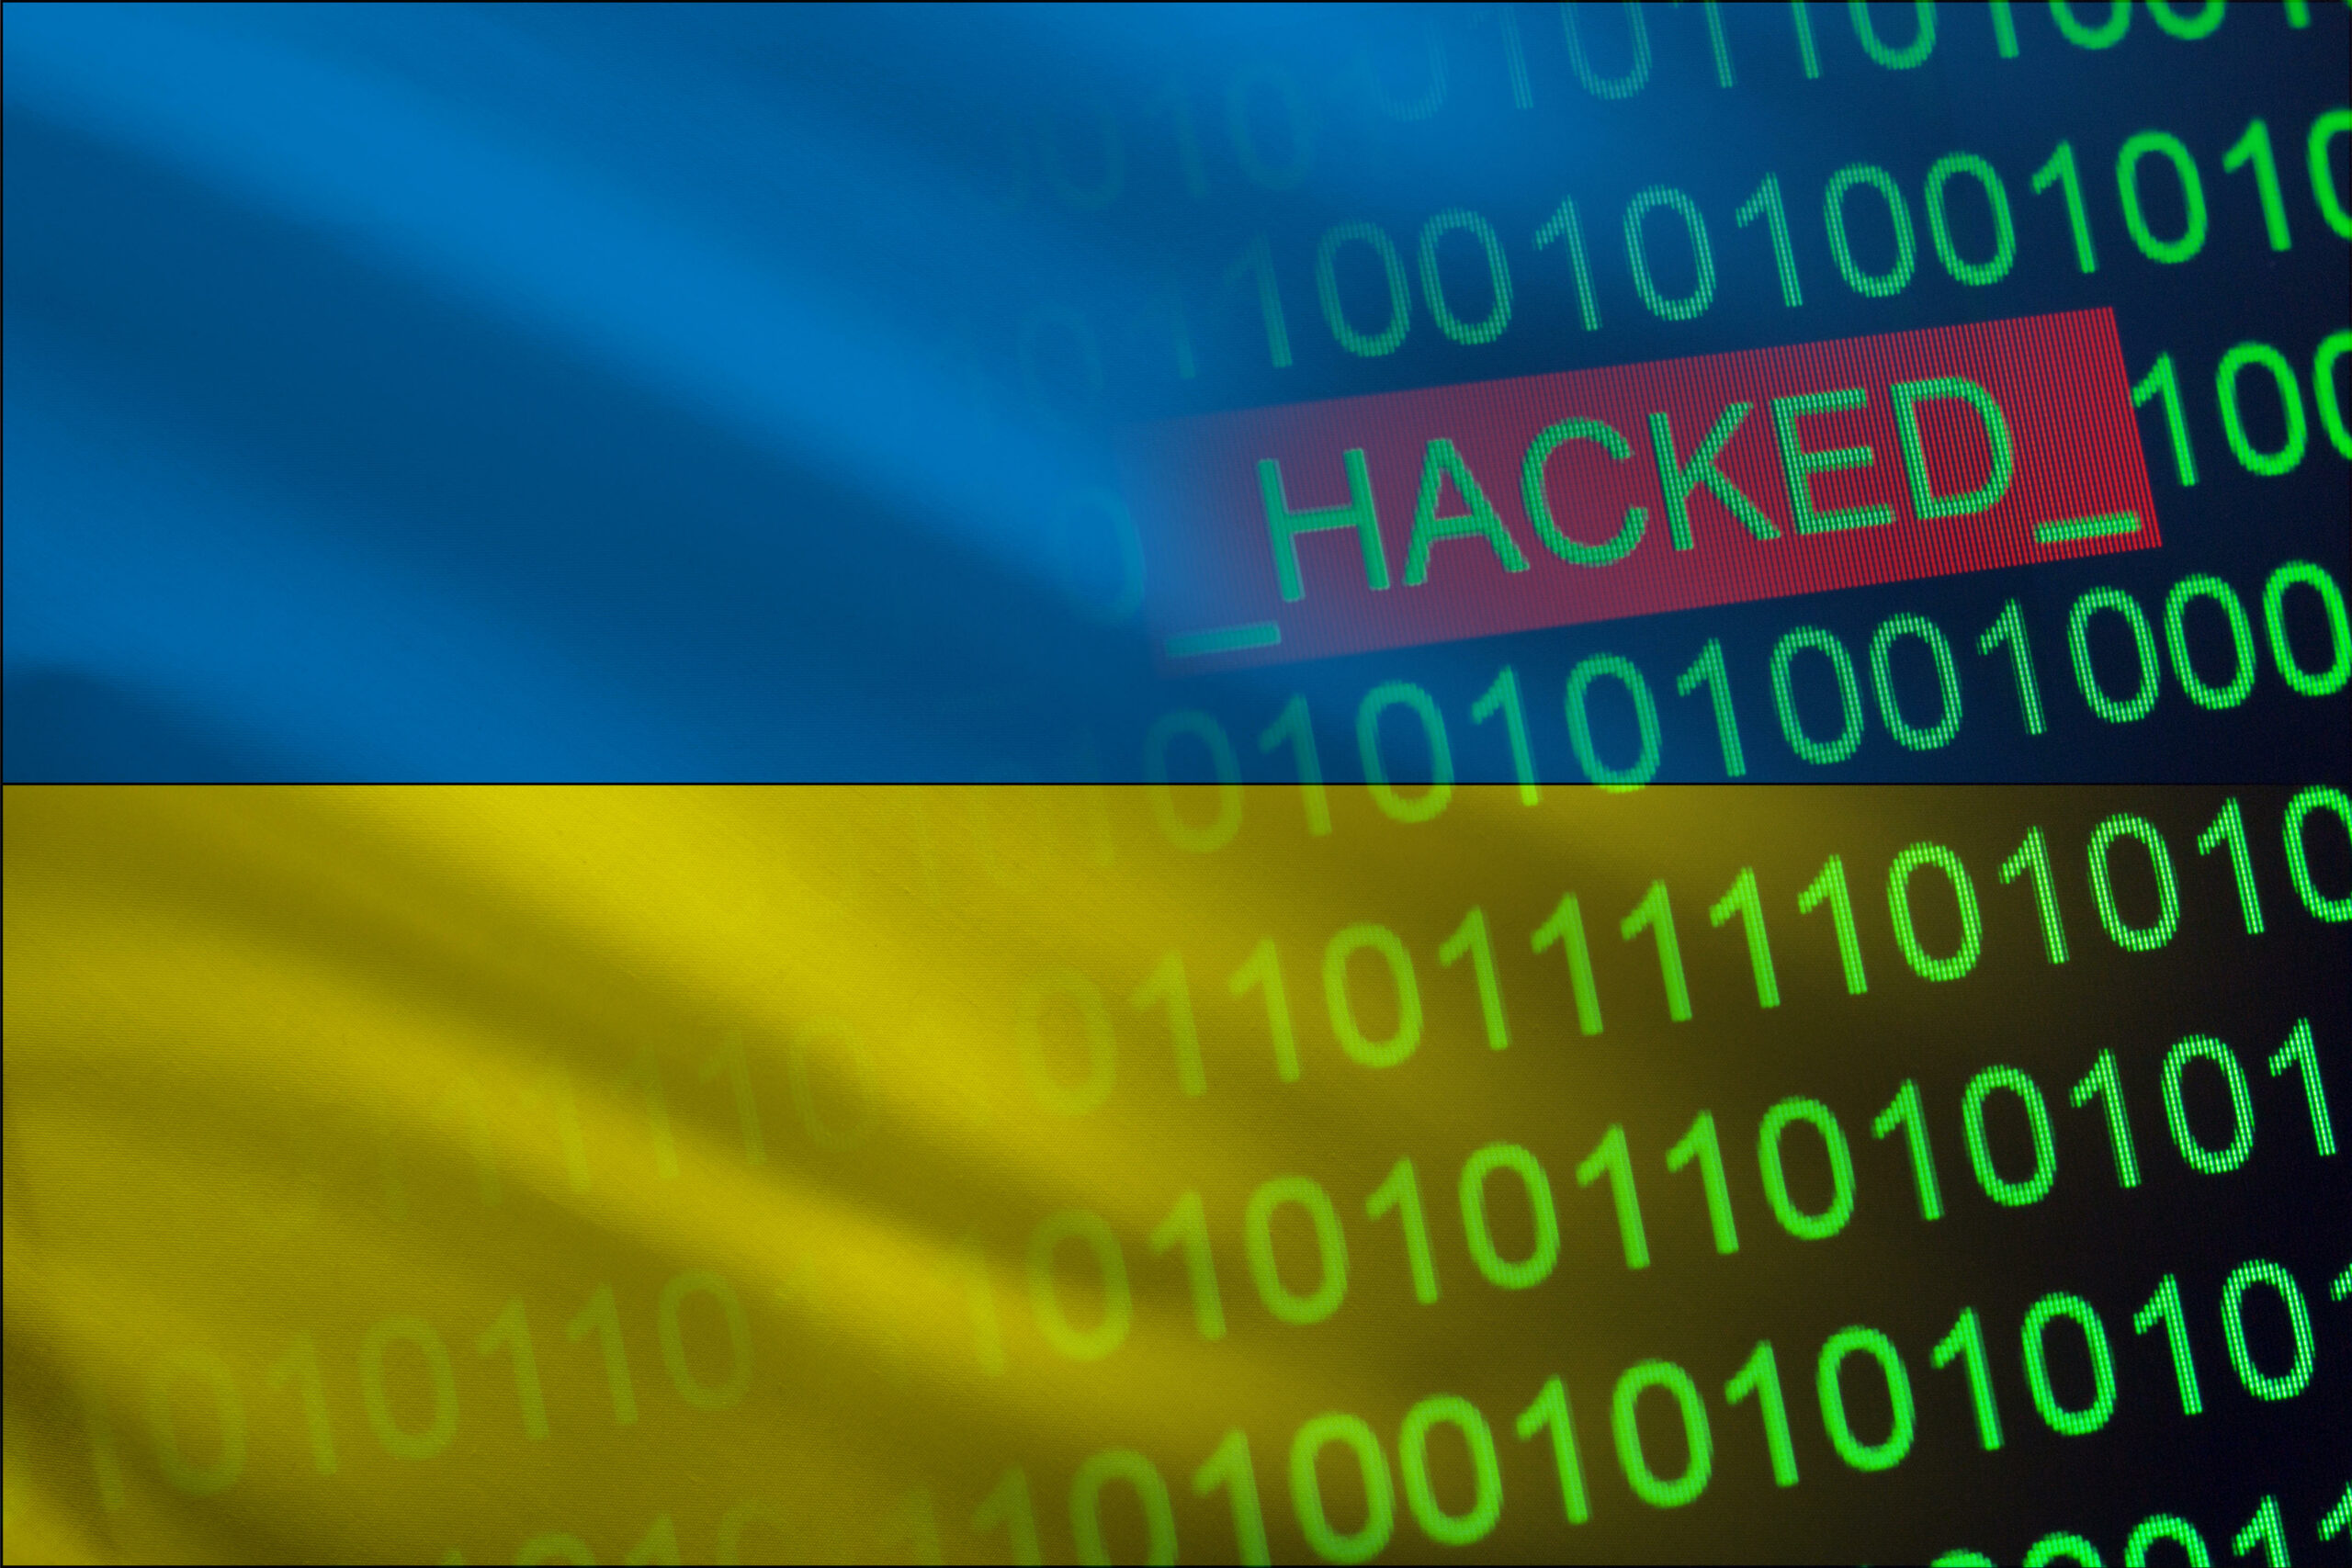 Russisk vannverk hacket som gjengjeldelse for Kyivstar-treffet